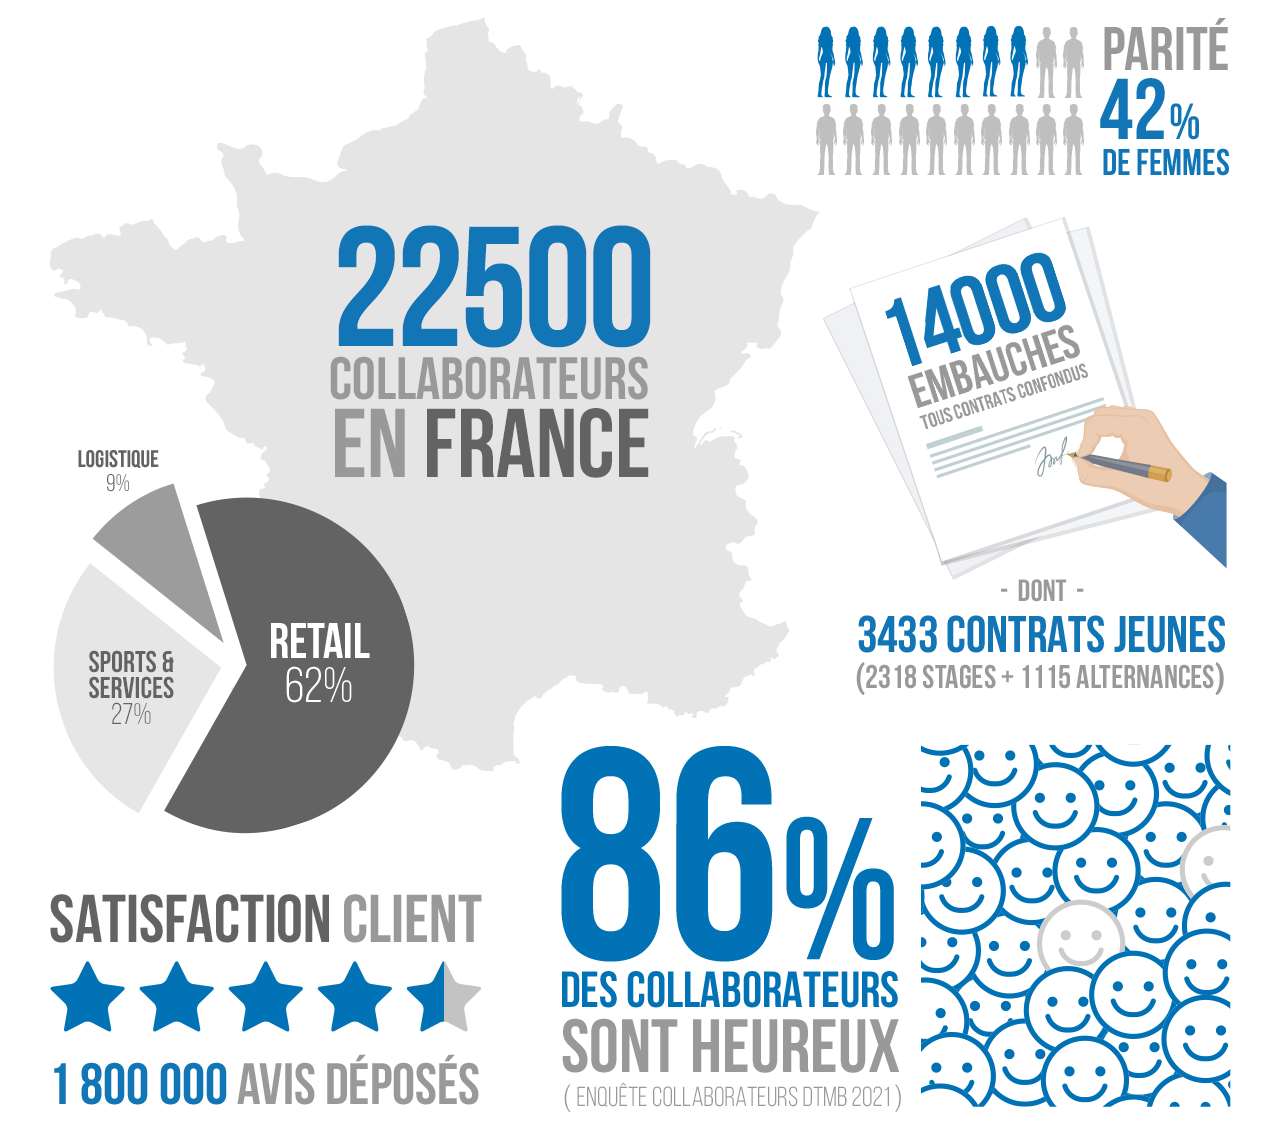 22500 collaborateurs en France